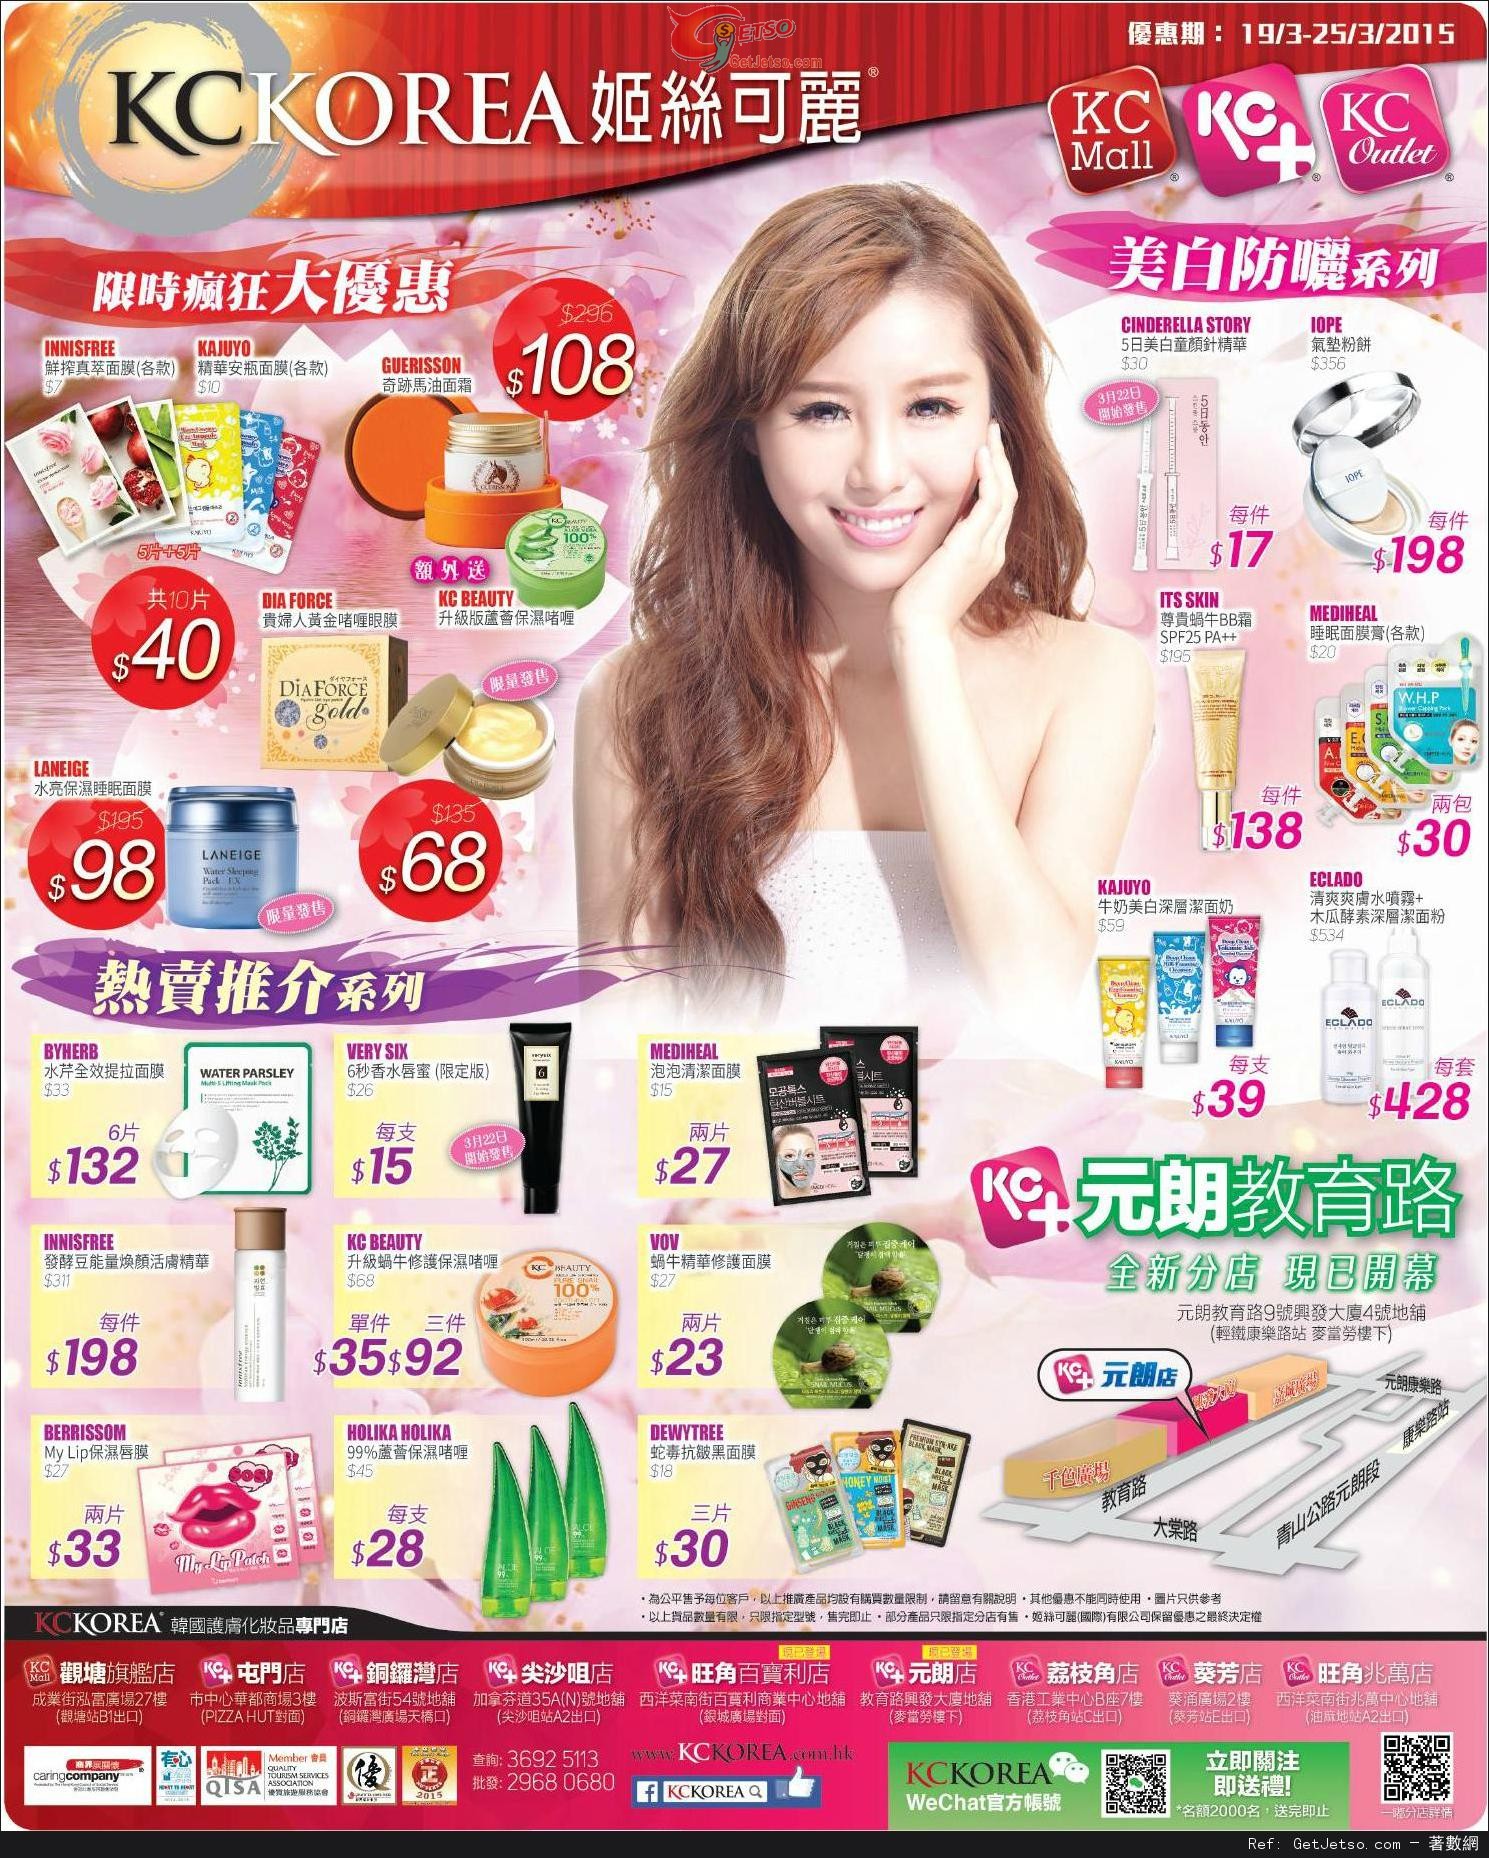 KC KOREA 防曬美白產品購買優惠(至15年3月25日)圖片1